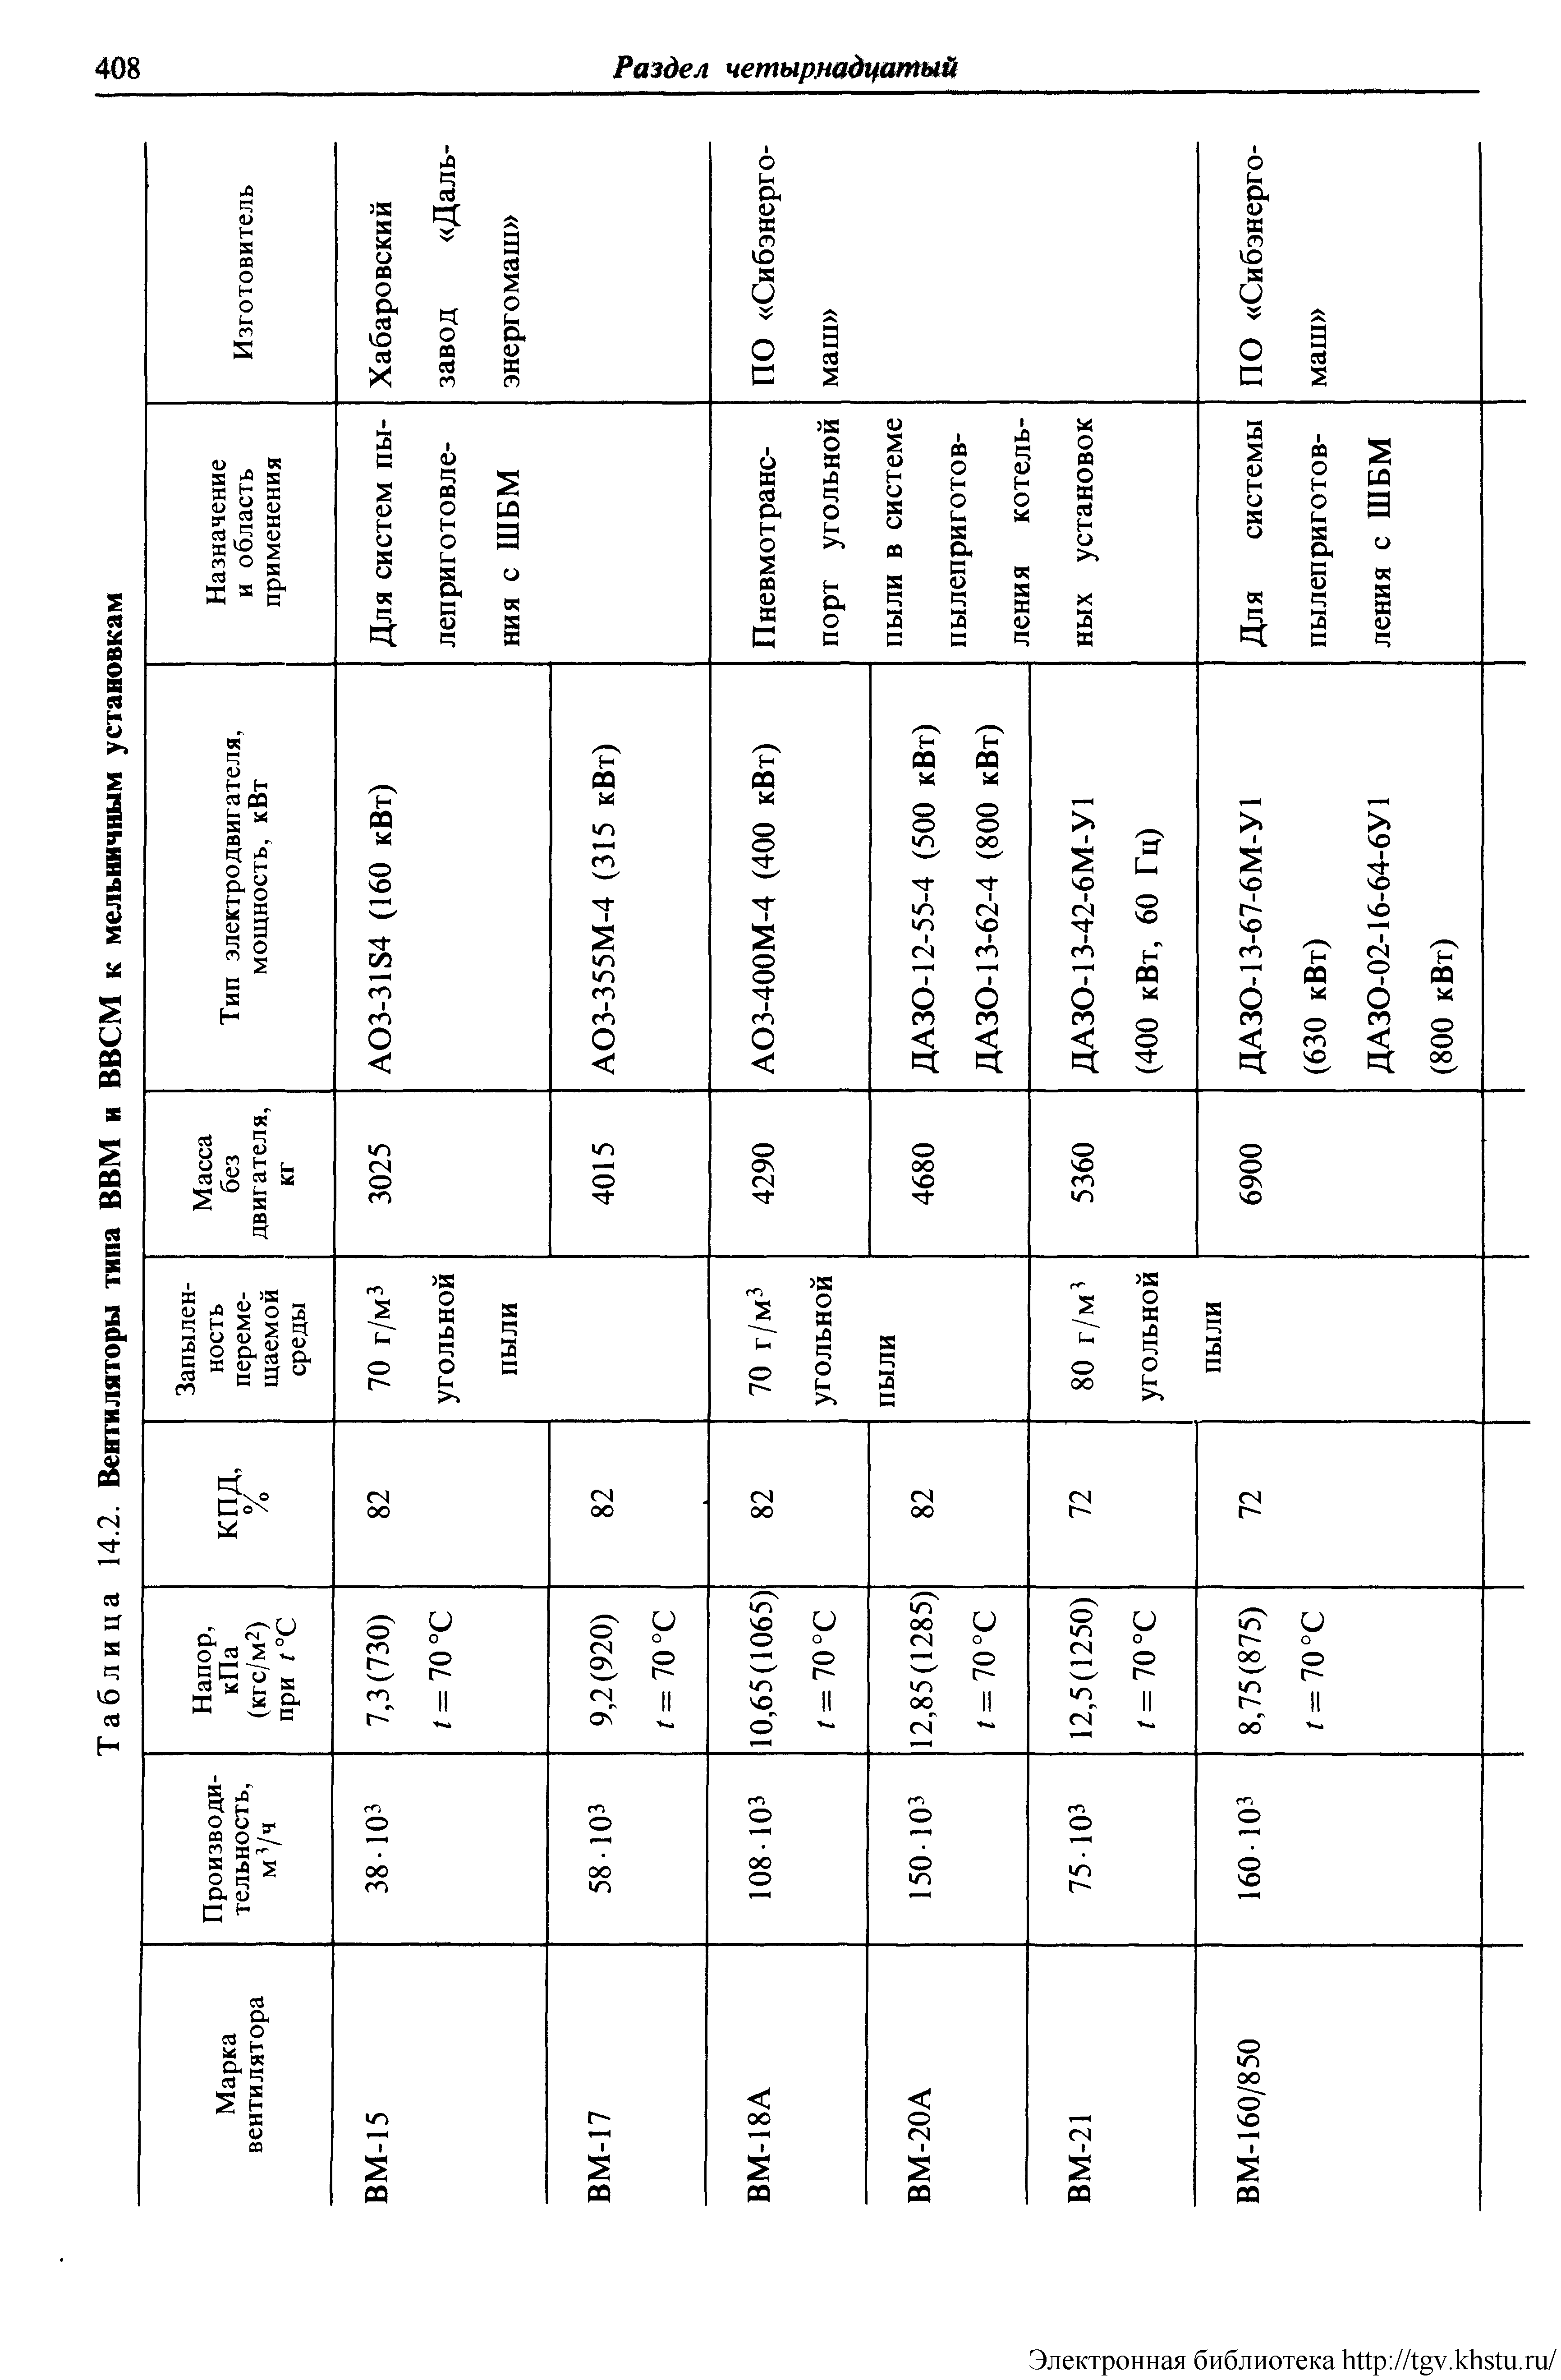 Таблица 14.2. Вентиляторы типа ВВМ и ВВСМ к мельничным установкам
